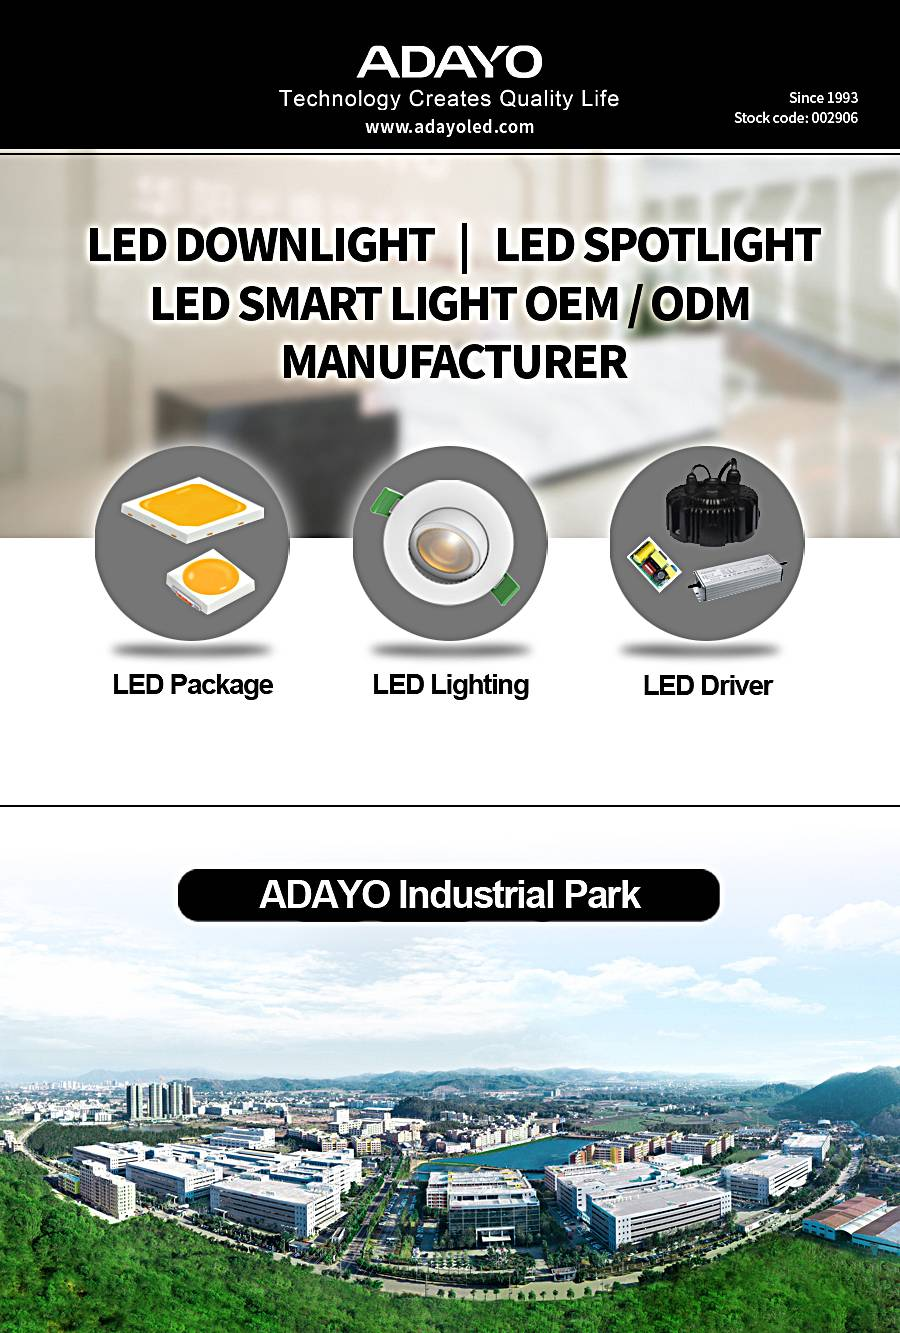  Led Ceiling Spotlight Manufacturer